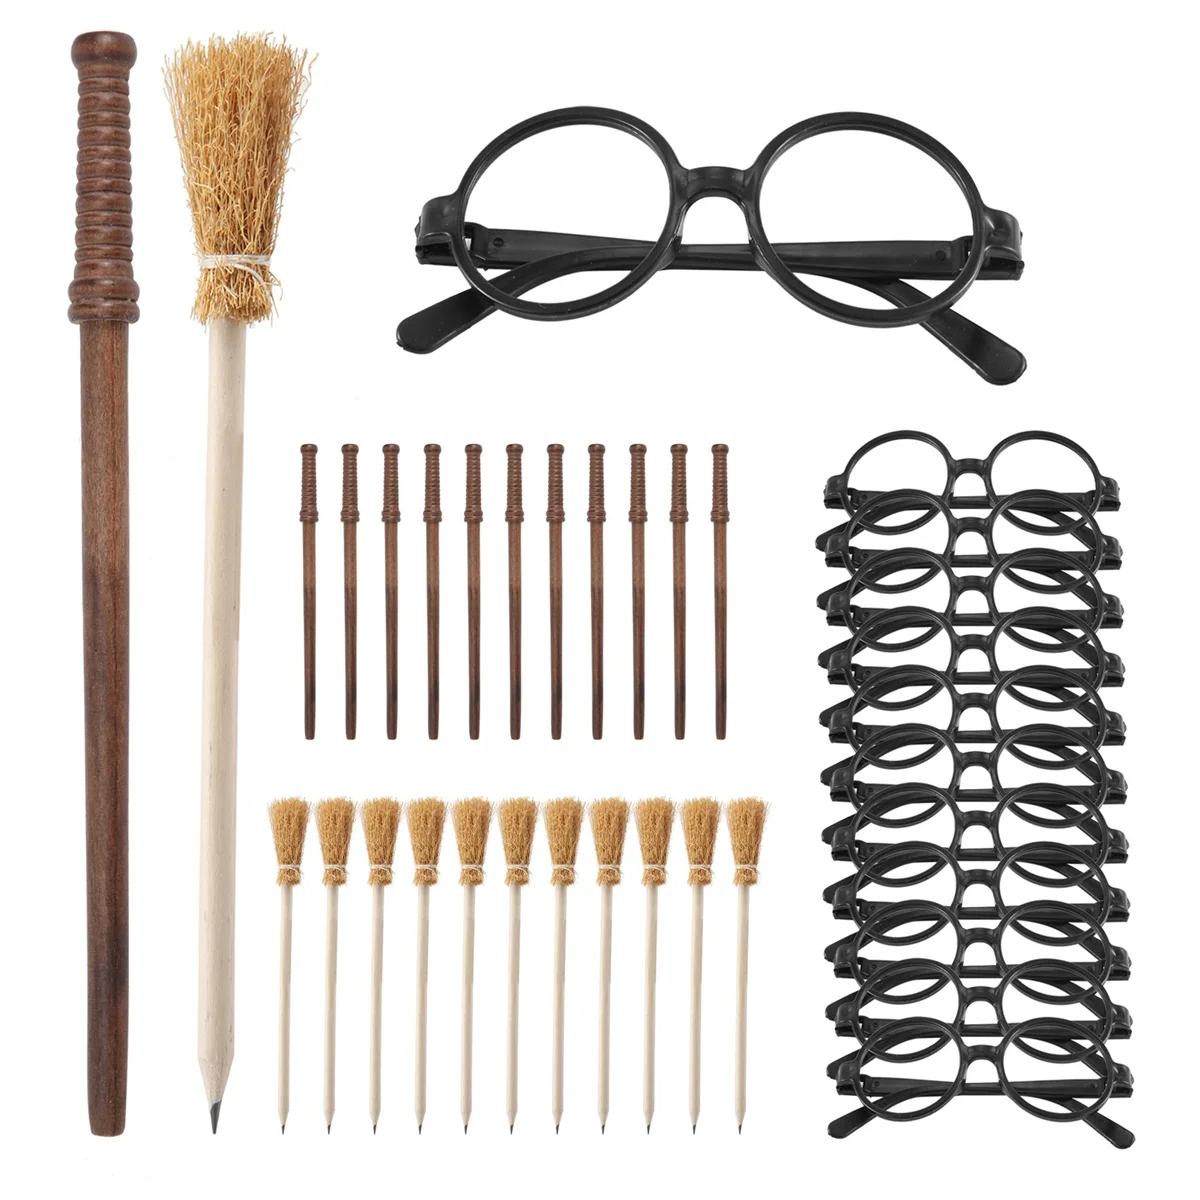 

Карандаш и палочки с ведьмой, 36 шт., карандаши и очки с круглой оправой, без линз, волшебные палочки